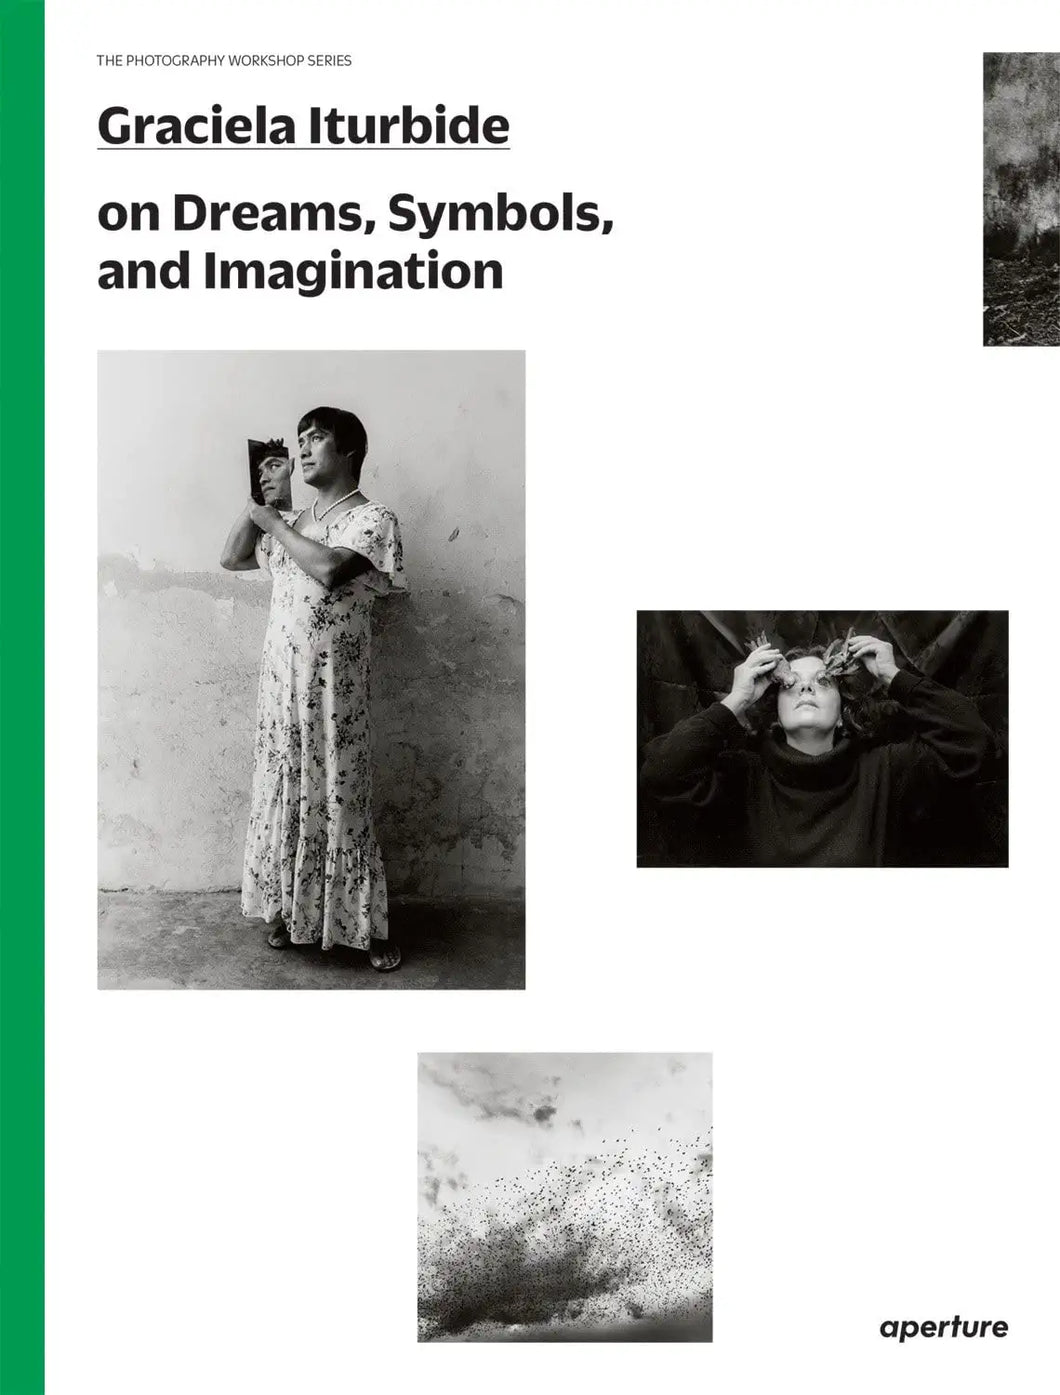 Graciela Iturbide on Dreams, Symbols, and Imagination